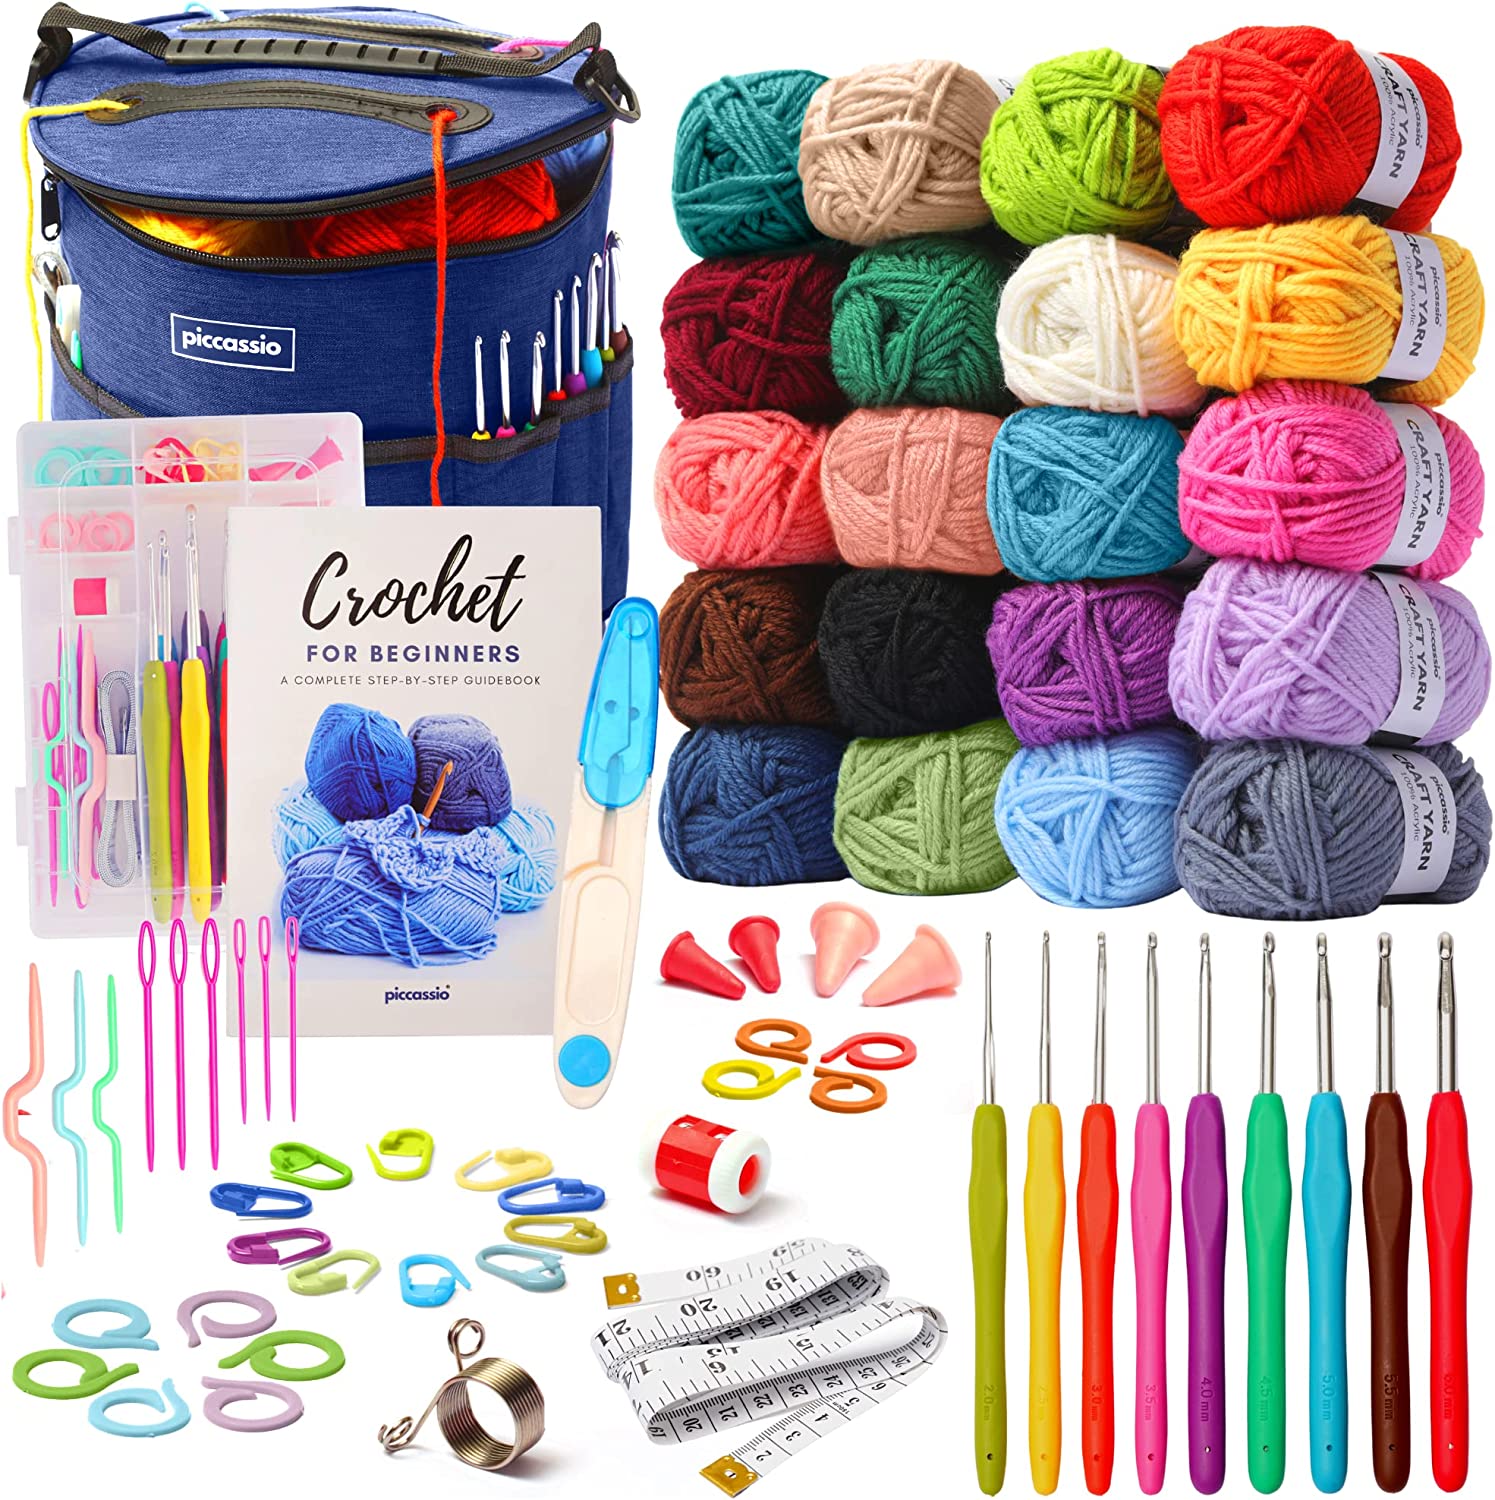 J MARK Acrylic Crochet Kit for Beginners – Premium Crochet Starter